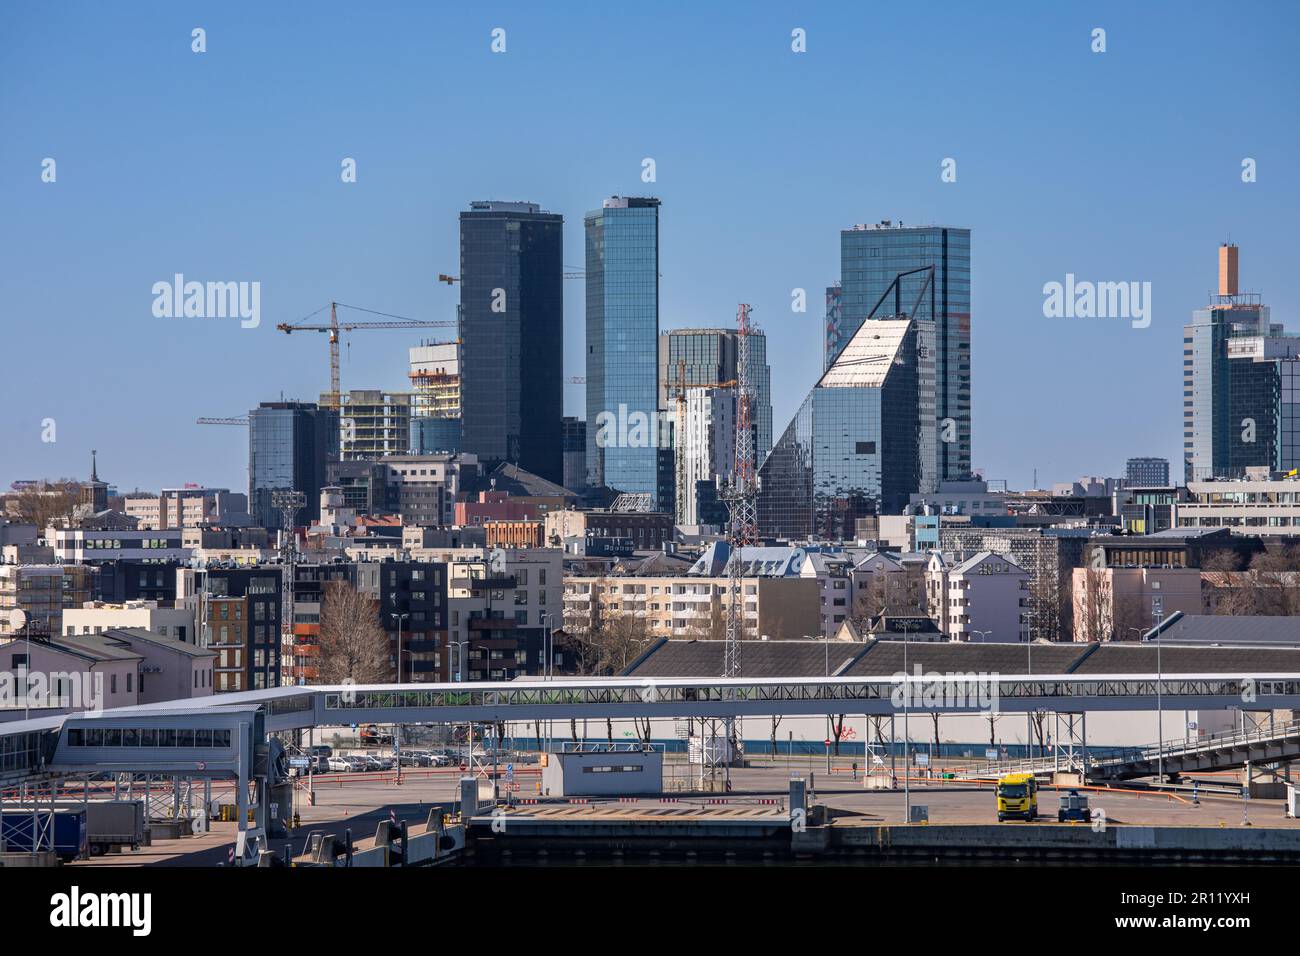 Il paesaggio urbano di Tallinn con grattacieli contro il cielo blu chiaro a Tallinn, Estonia Foto Stock